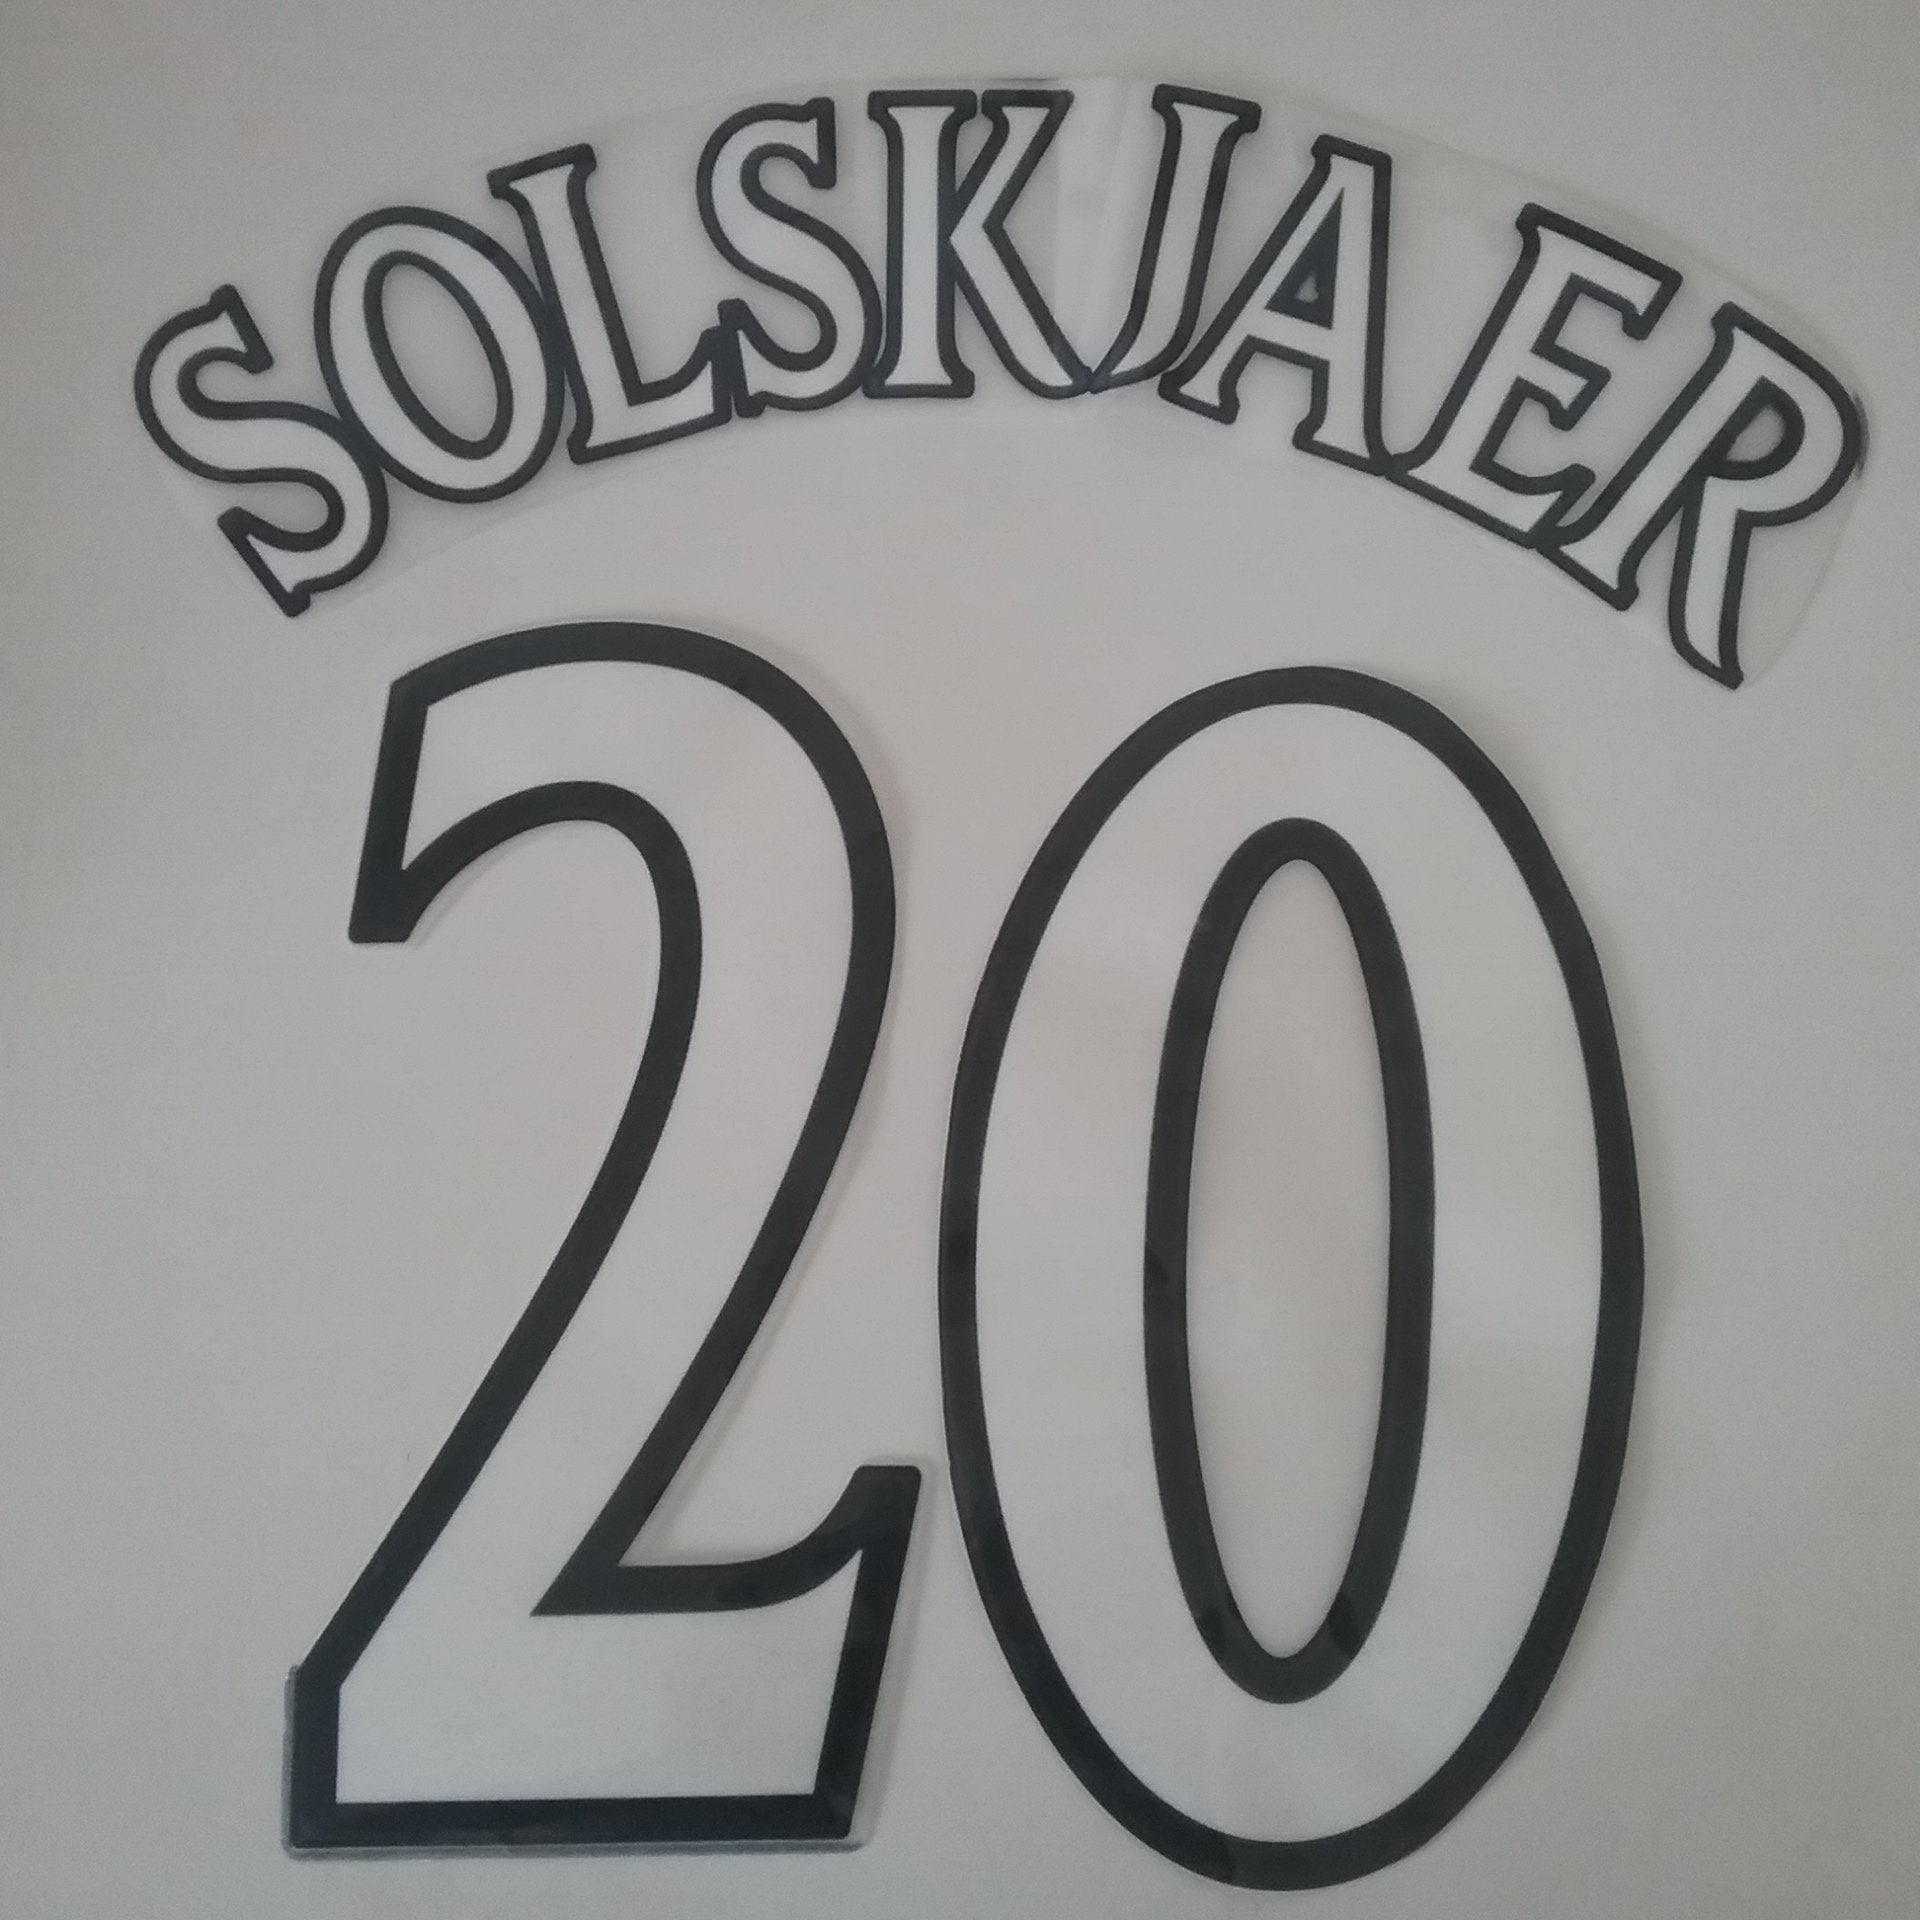 1999 Solskjaer #20 Manchester United Nameset - ClassicFootballJersey